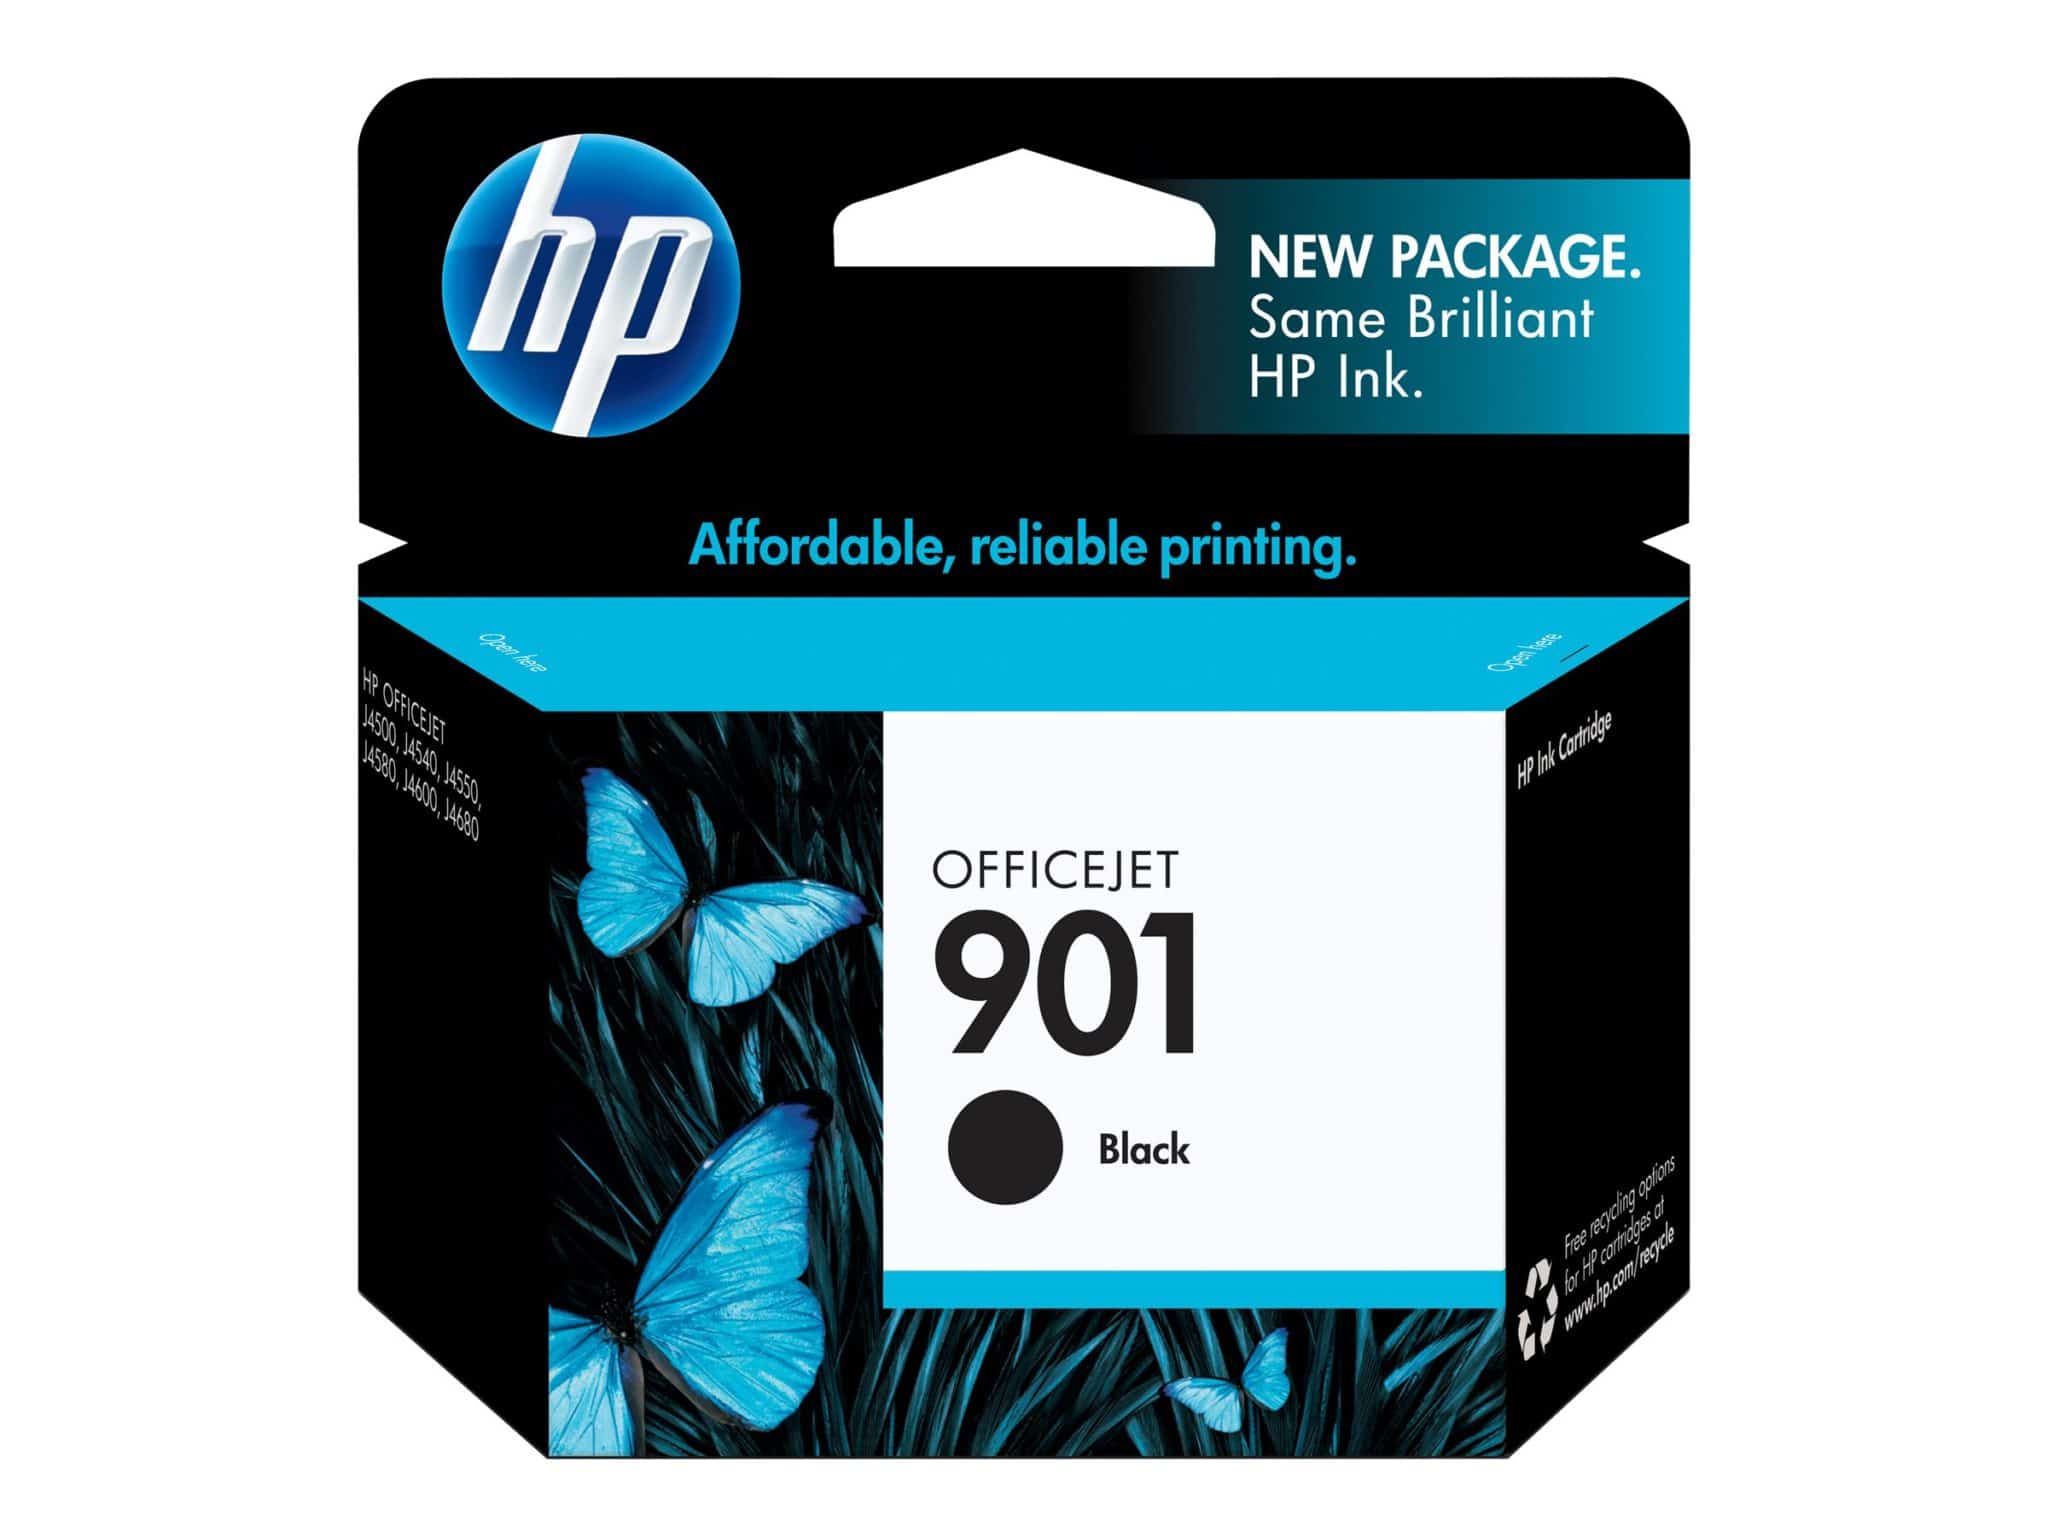 HP 901 Black Original OfficeJet Ink Cartridge